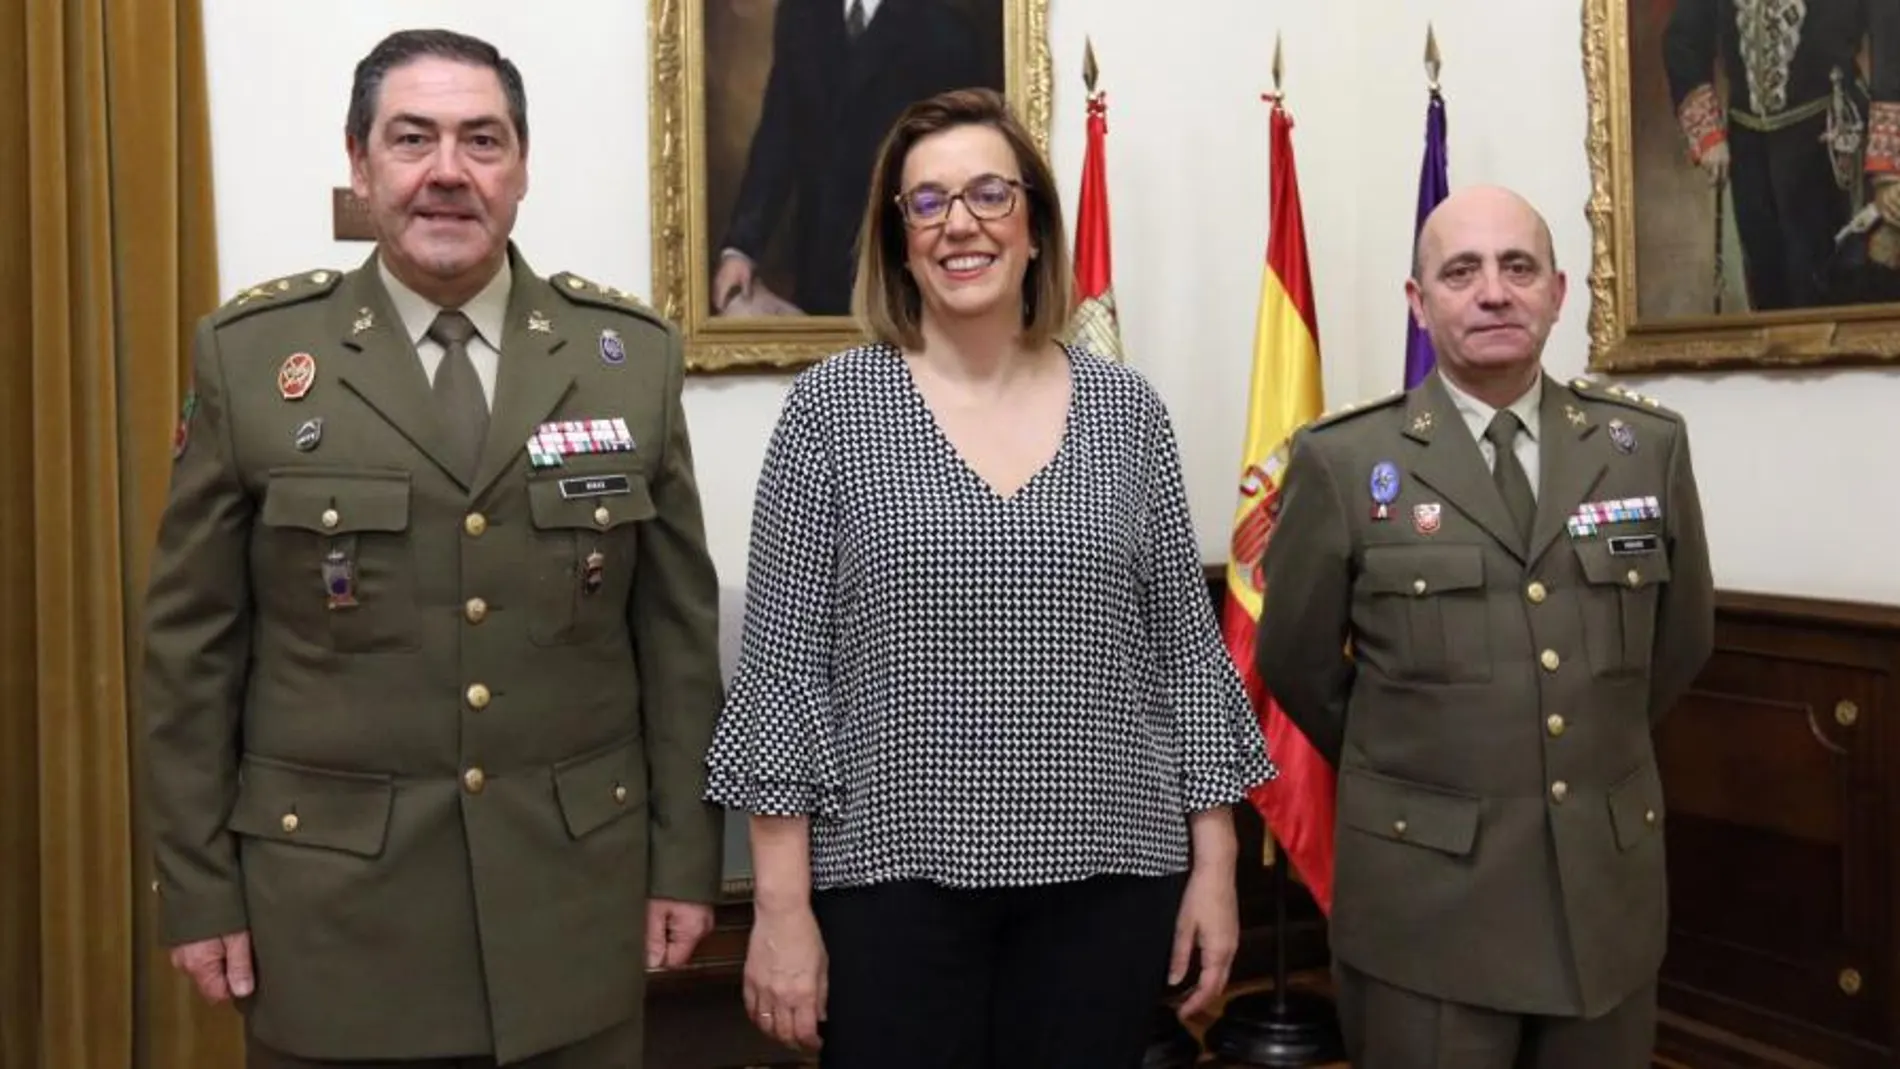 José Rivas, Ángeles Armisén y Carlos Hidalgo en la recepción en la Diputación de Palencia